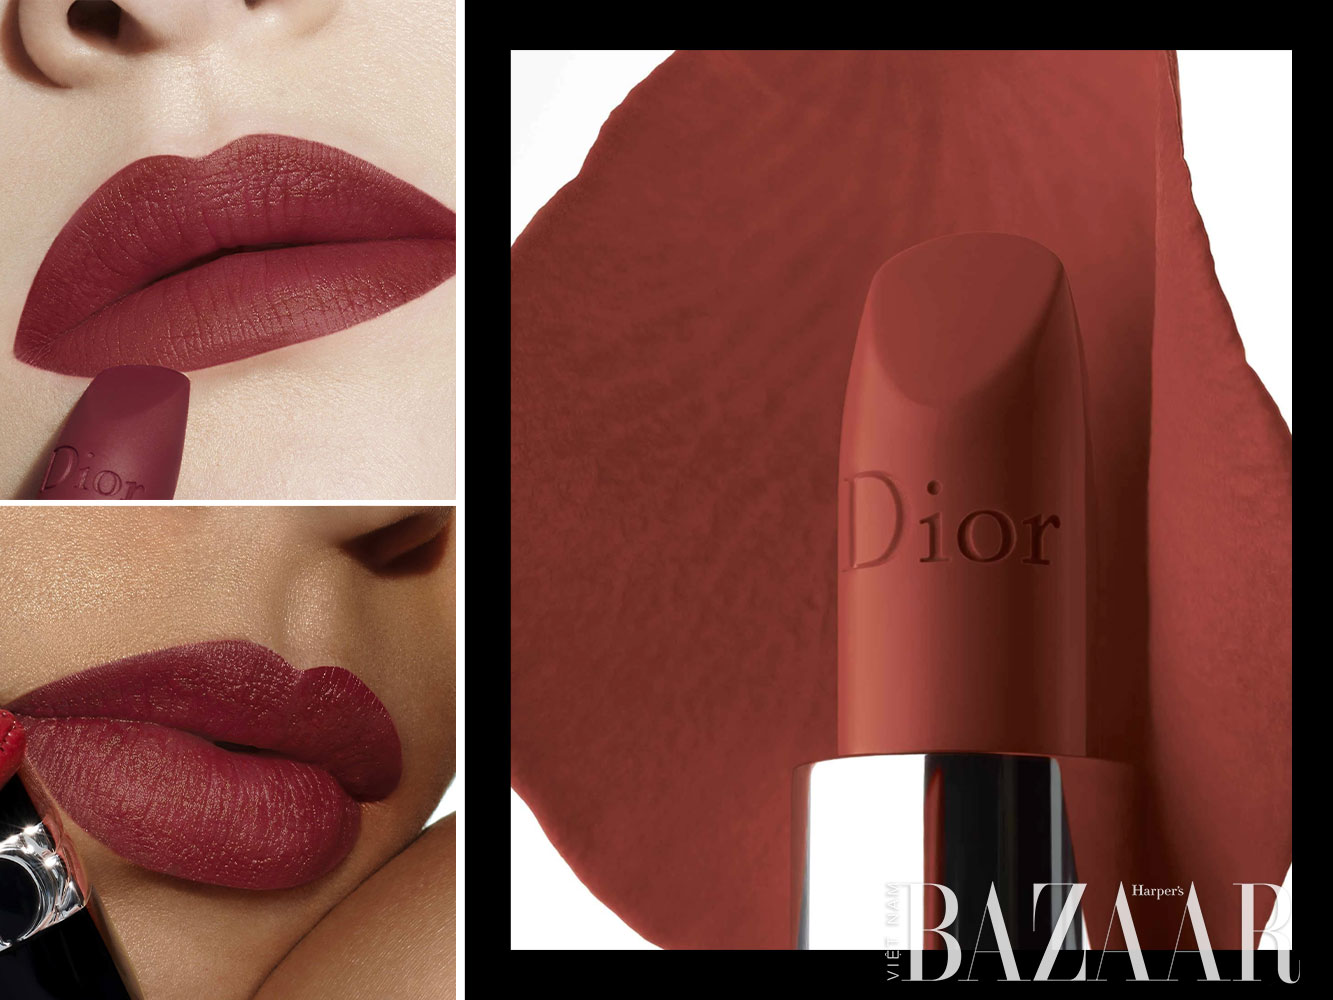 Son môi Dior màu nào đẹp: Rouge Dior 964 Matte dạng lì